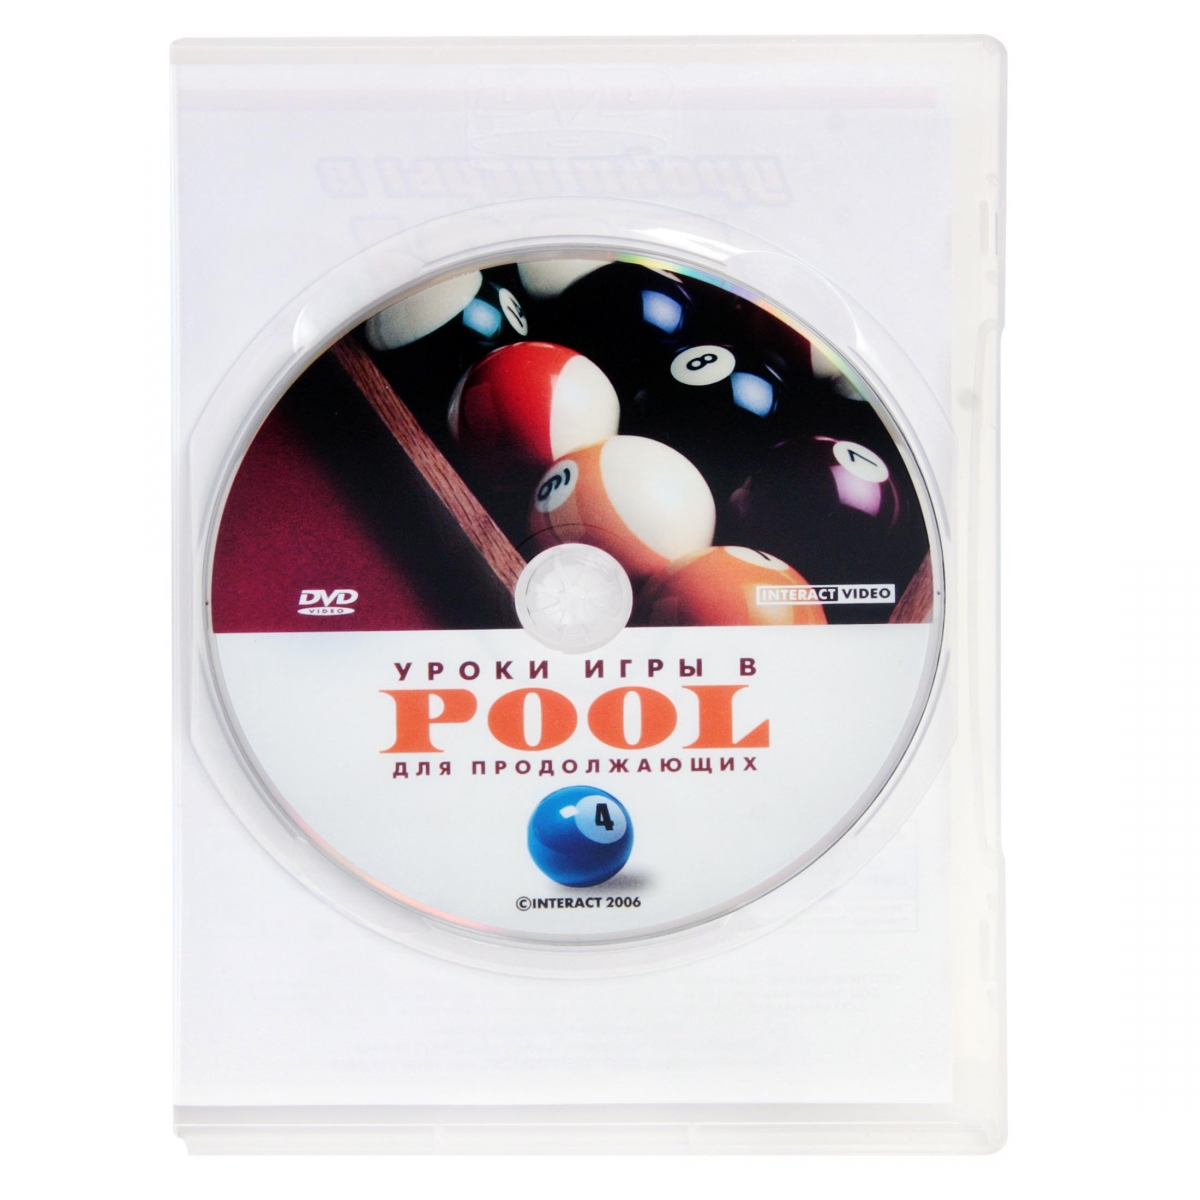 DVD Уроки игры в pool для продолжающих. Часть 4